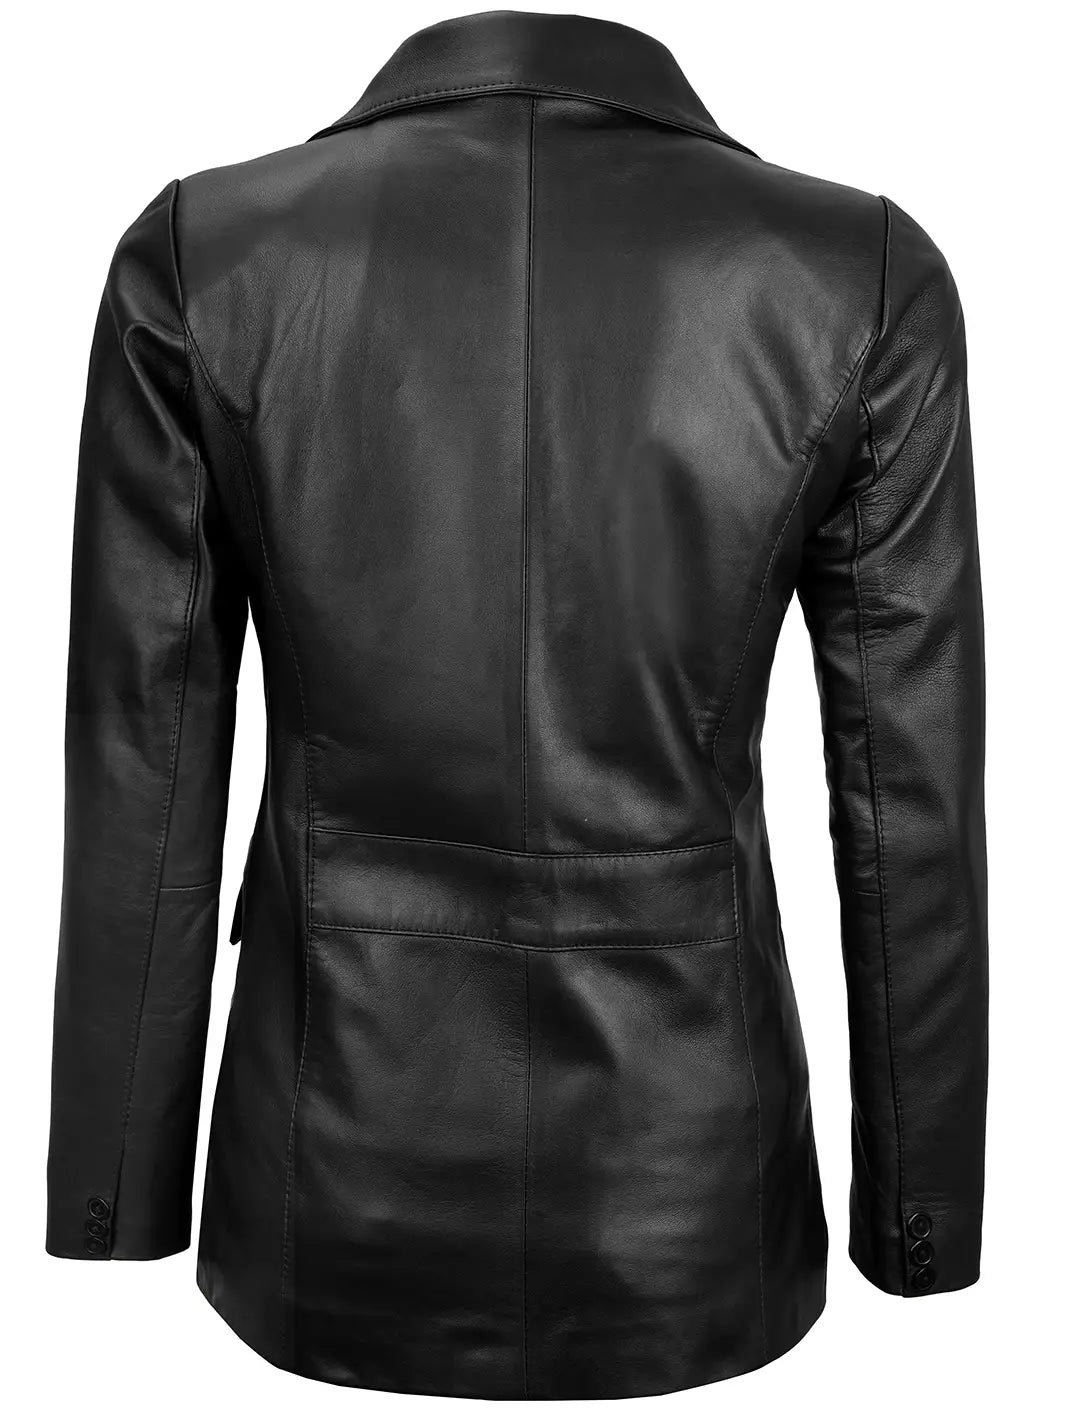 Wpmens leather blazer